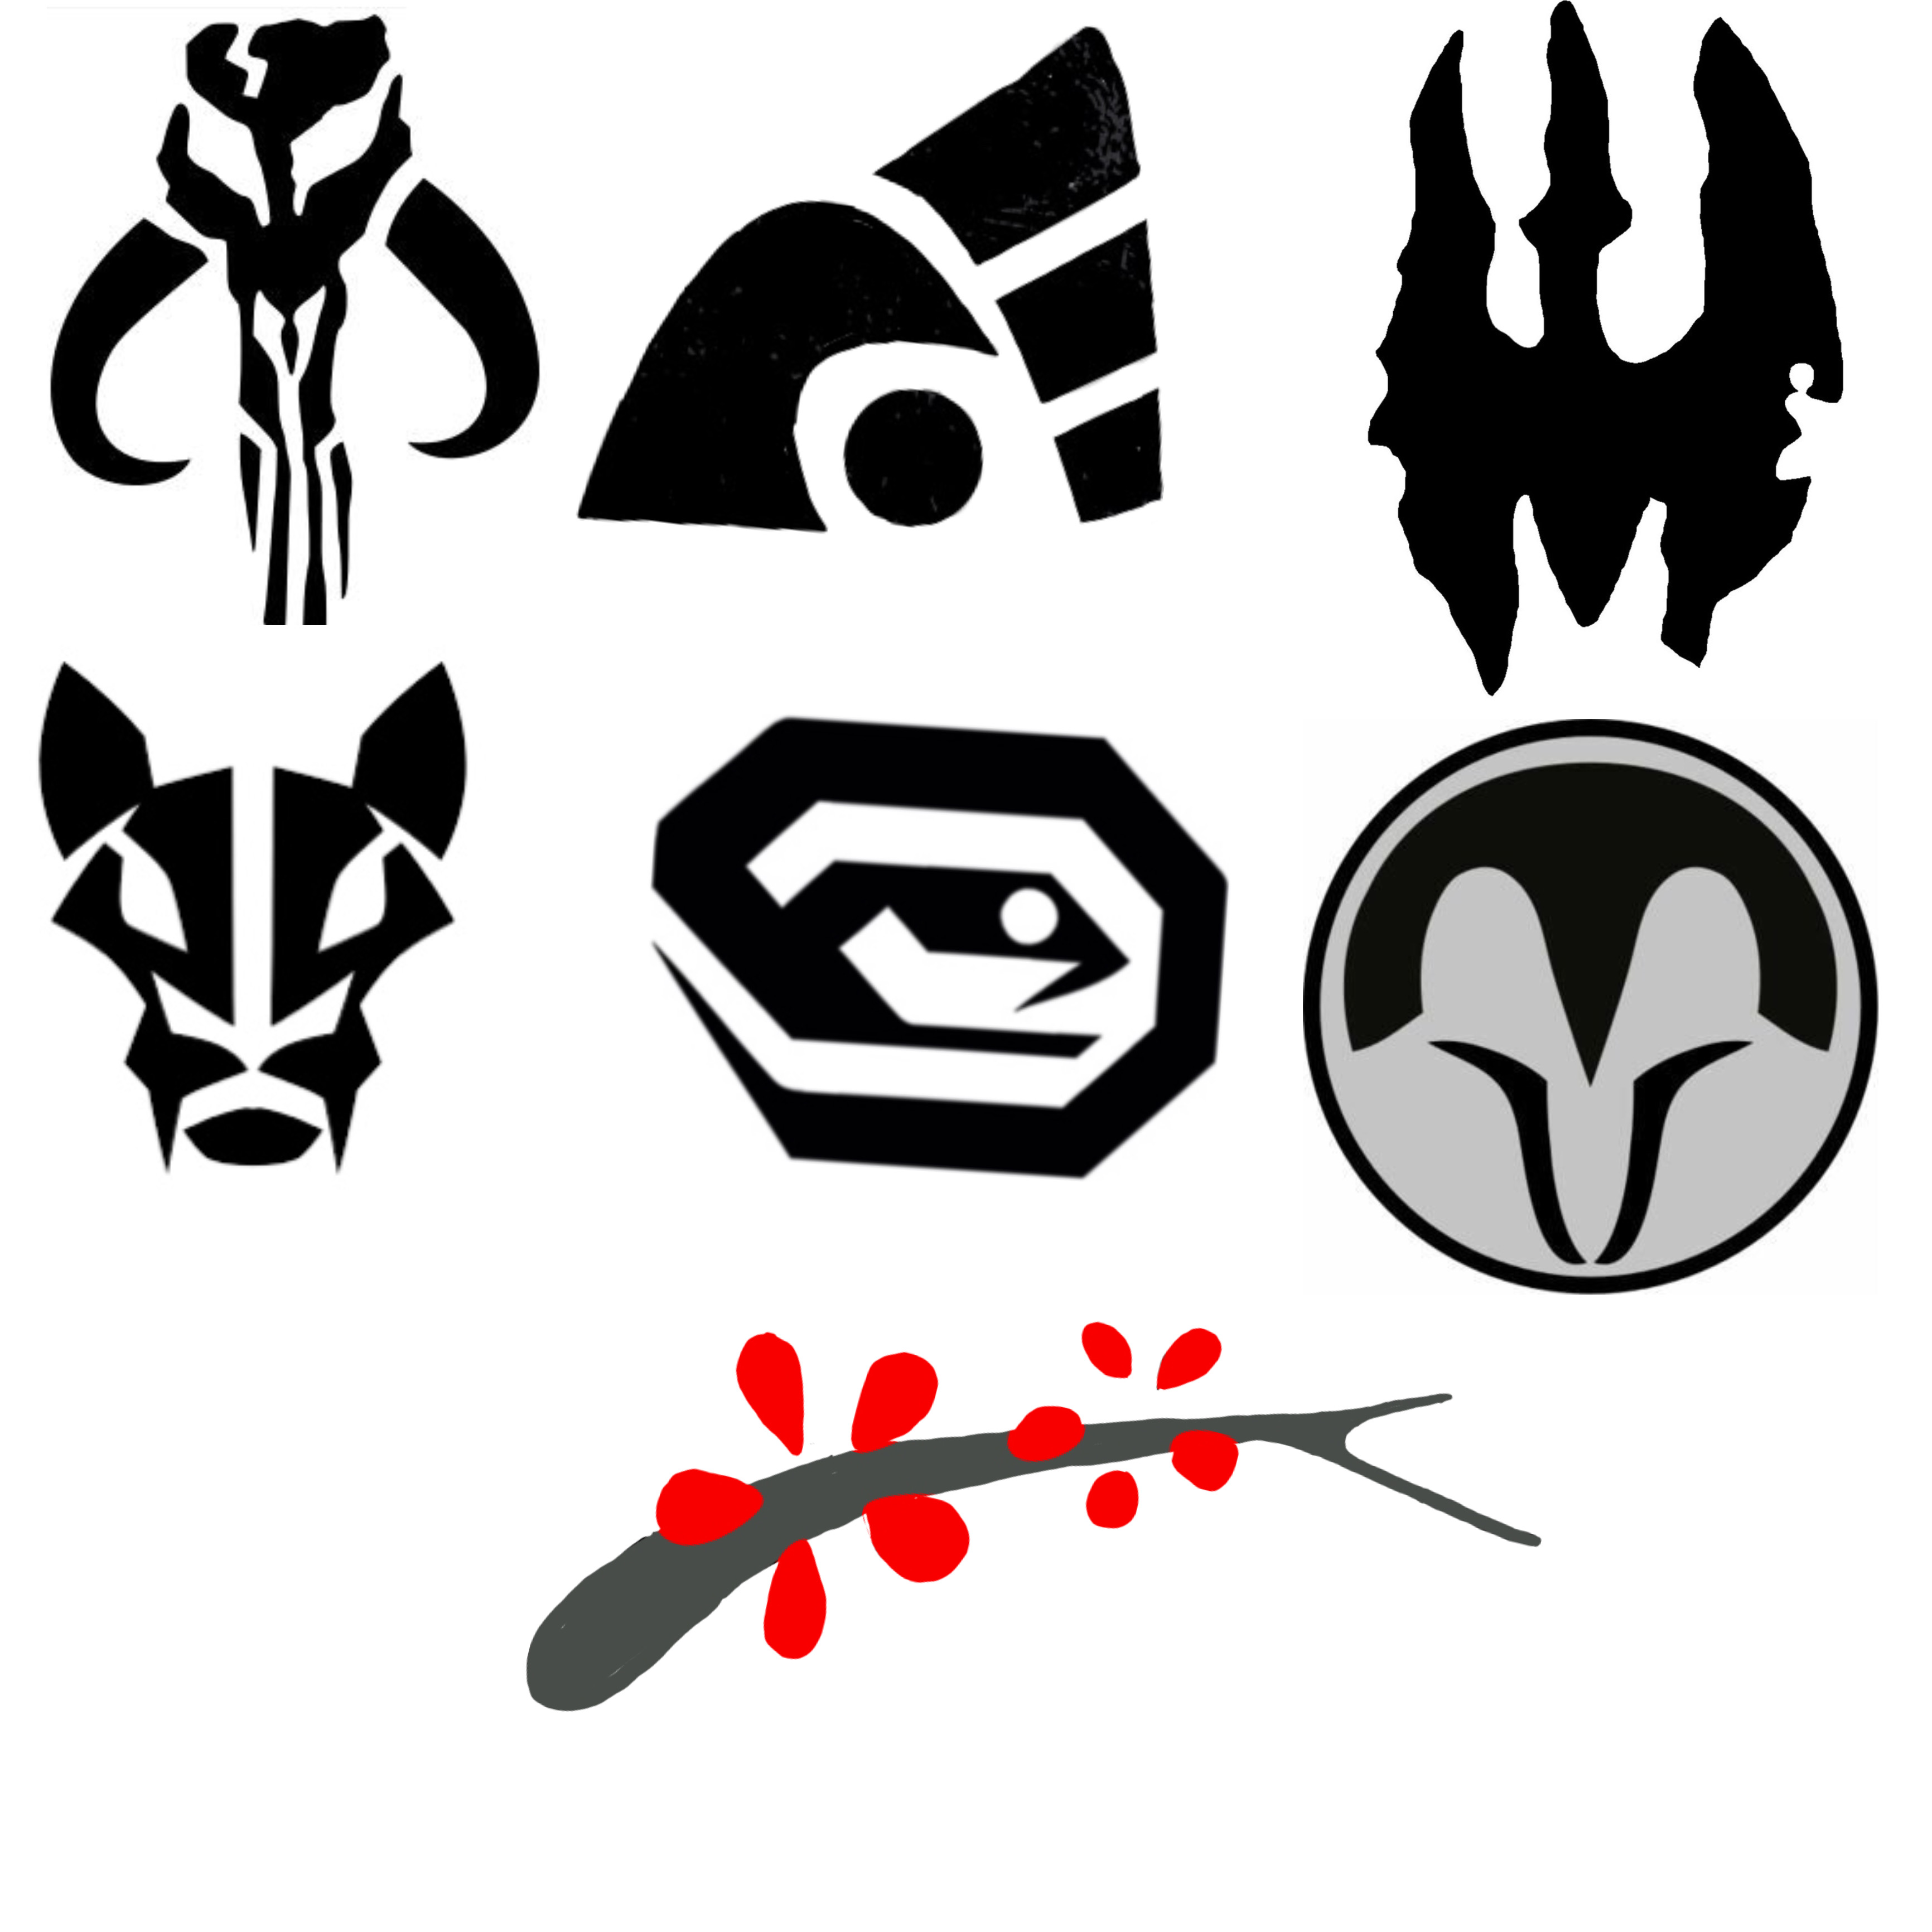 Clan wren symbol